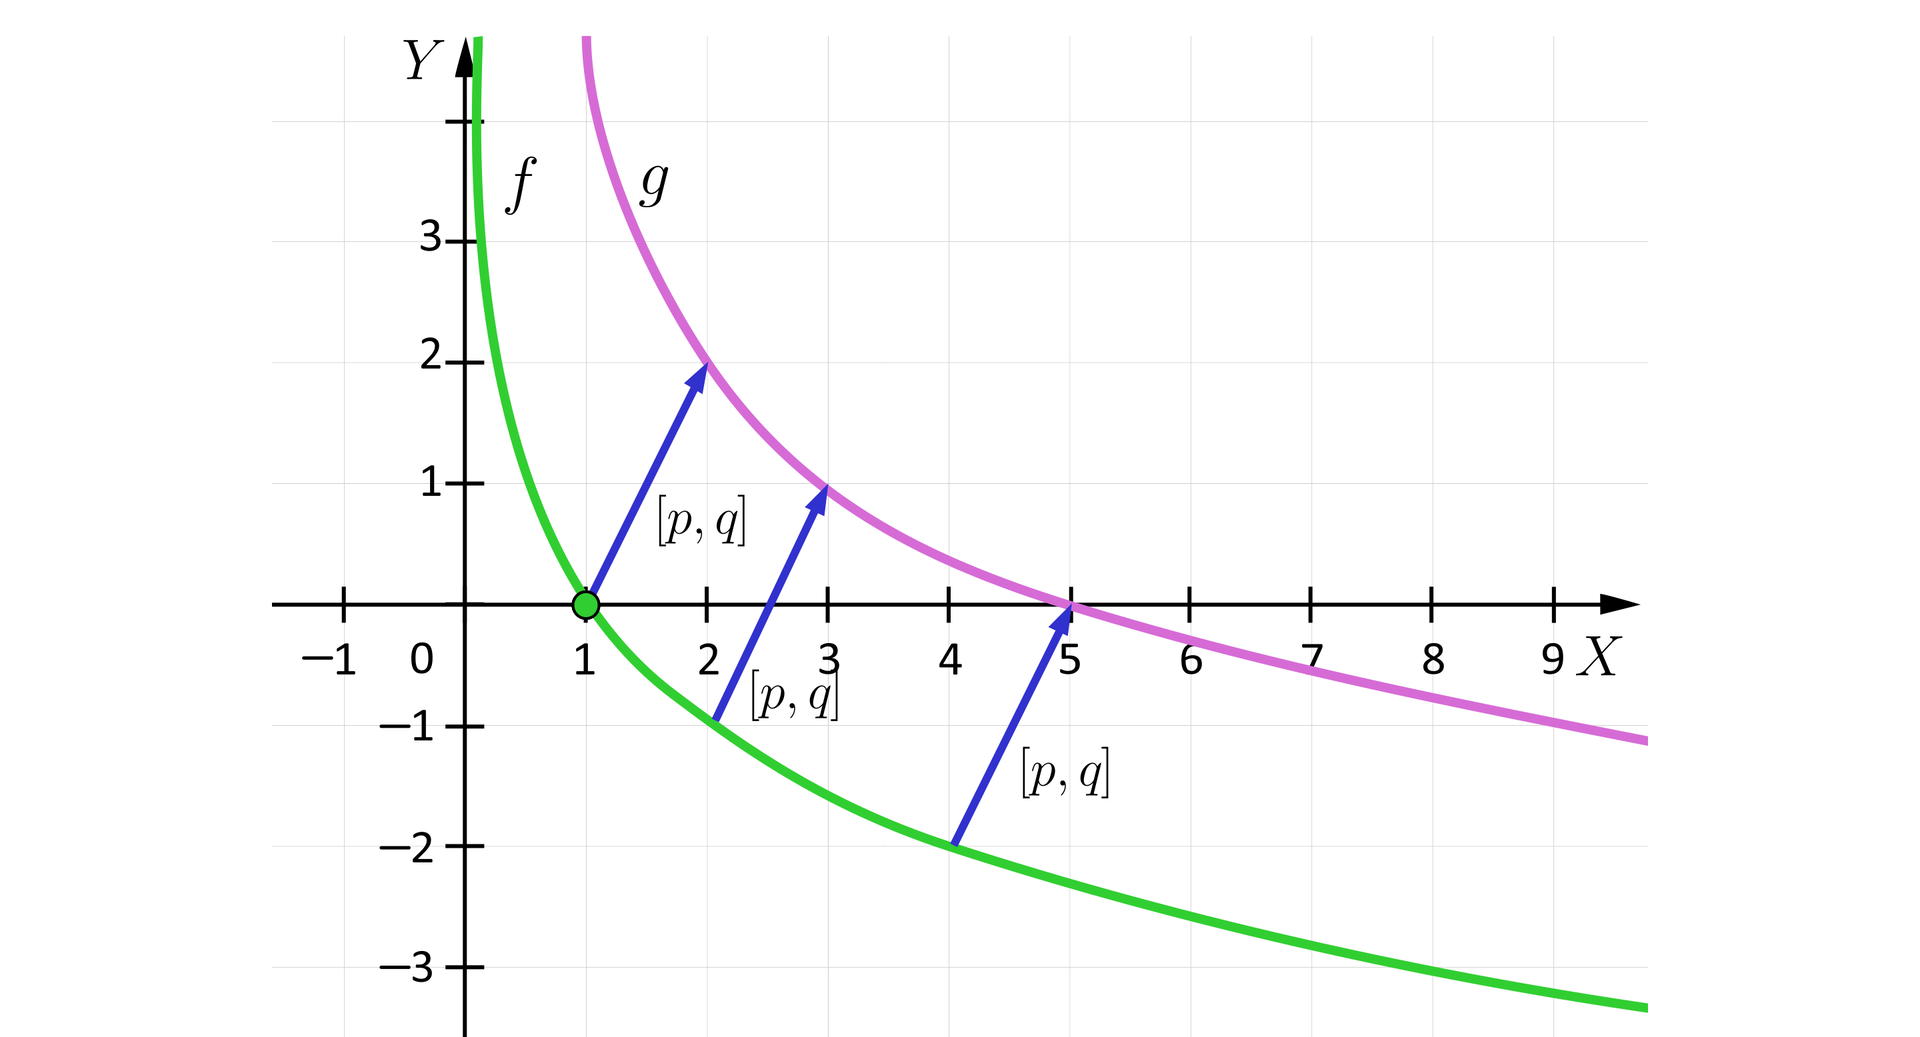 Ilustracja przedstawia układ współrzędnych z poziomą osią X od minus jeden do dziewięciu oraz z pionową osią Y od minus trzech do czterech. Na płaszczyźnie zaznaczono wykresy dwóch funkcji. Funkcja f jest funkcją logarytmiczną o podstawie z przedziału obustronnie otwartego od zera do jeden. Wykres funkcji f przechodzi przez punkt 1,0. wykres ten jest przesunięty o wektor p,q w górę i w prawo, co oznaczono trzema przykładowymi strzałkami reprezentującymi wektor p,q. Po przesunięciu wykresu funkcji f, otrzymujemy wykres funkcji g, który przecina oś X w punkcie o współrzędnych 5,0.